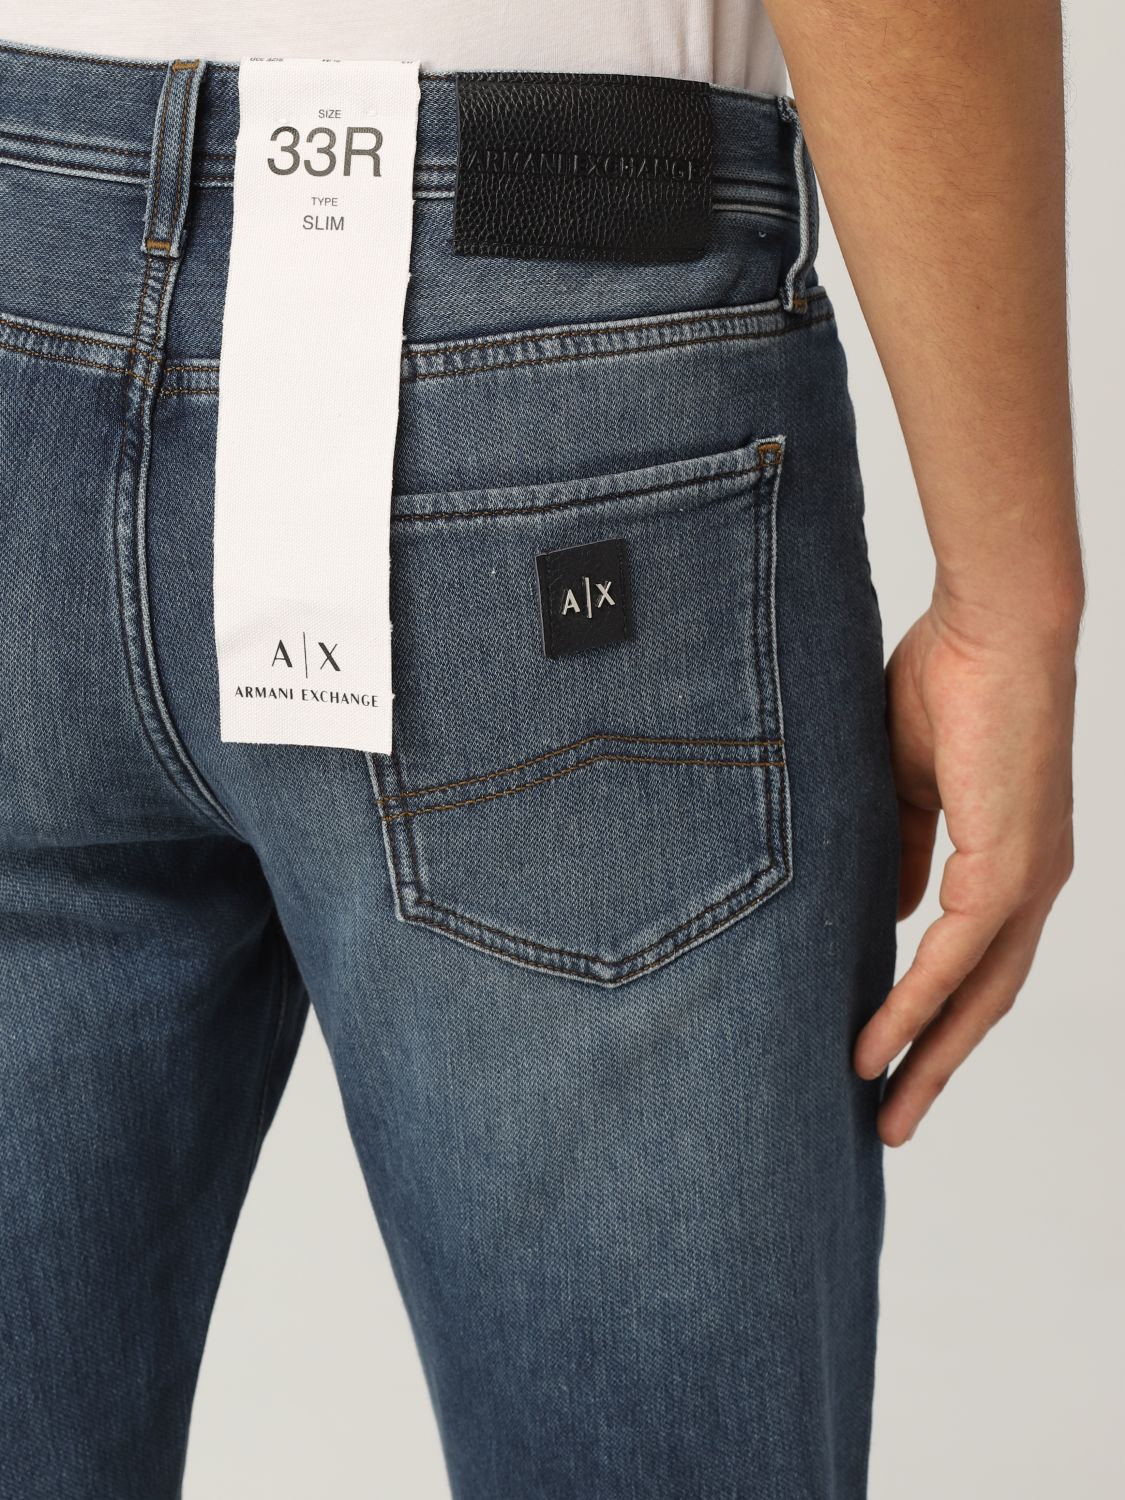 Norm violin næse ARMANI EXCHANGE: jeans in denim with logo | Jeans Armani Exchange Men Denim  | Jeans Armani Exchange 6KZJ13 Z1P6Z GIGLIO.COM